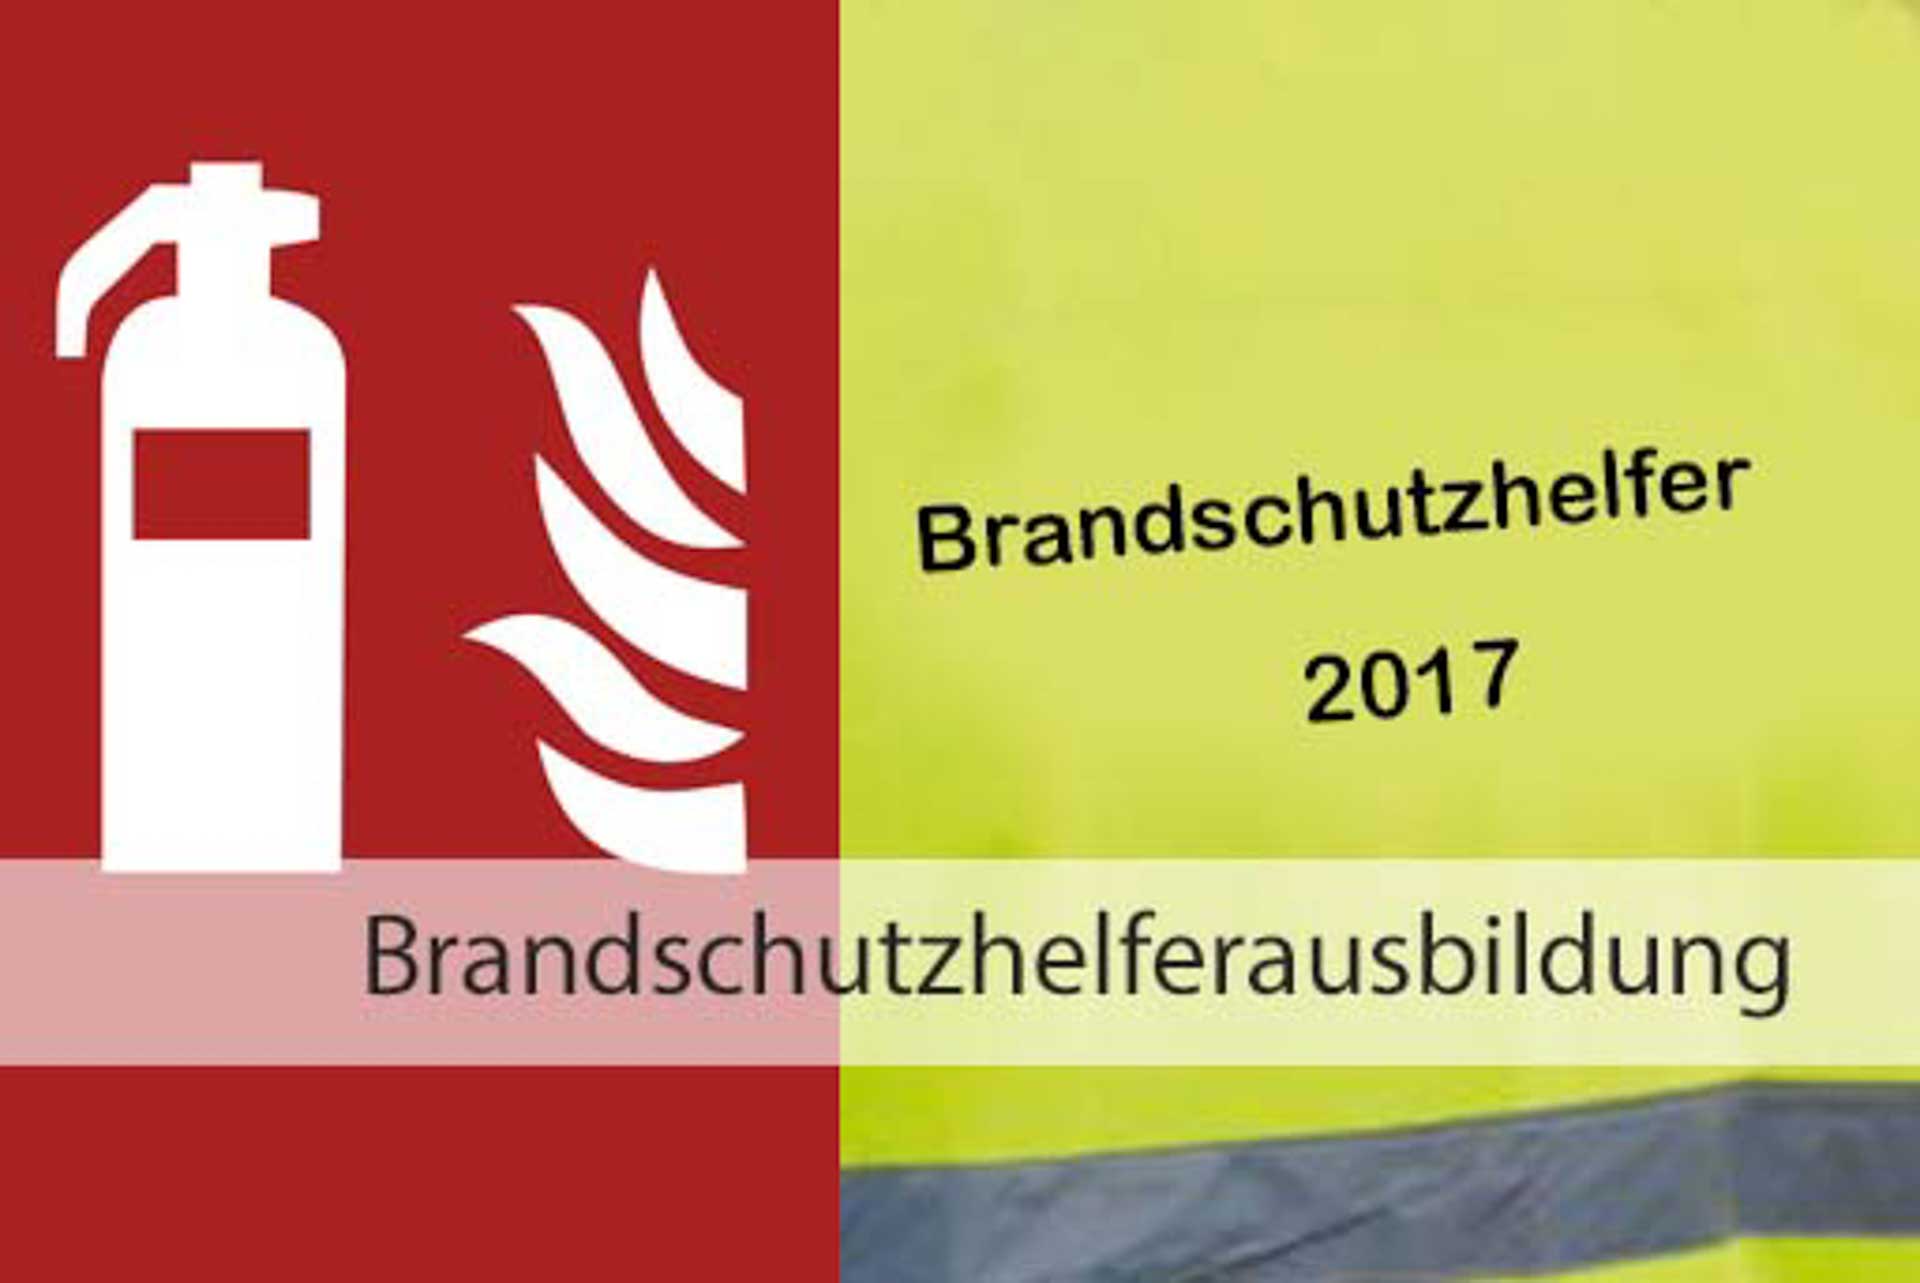 Brandschutzhelferausbildung | Papier-Schäfer GmbH & Co. KG